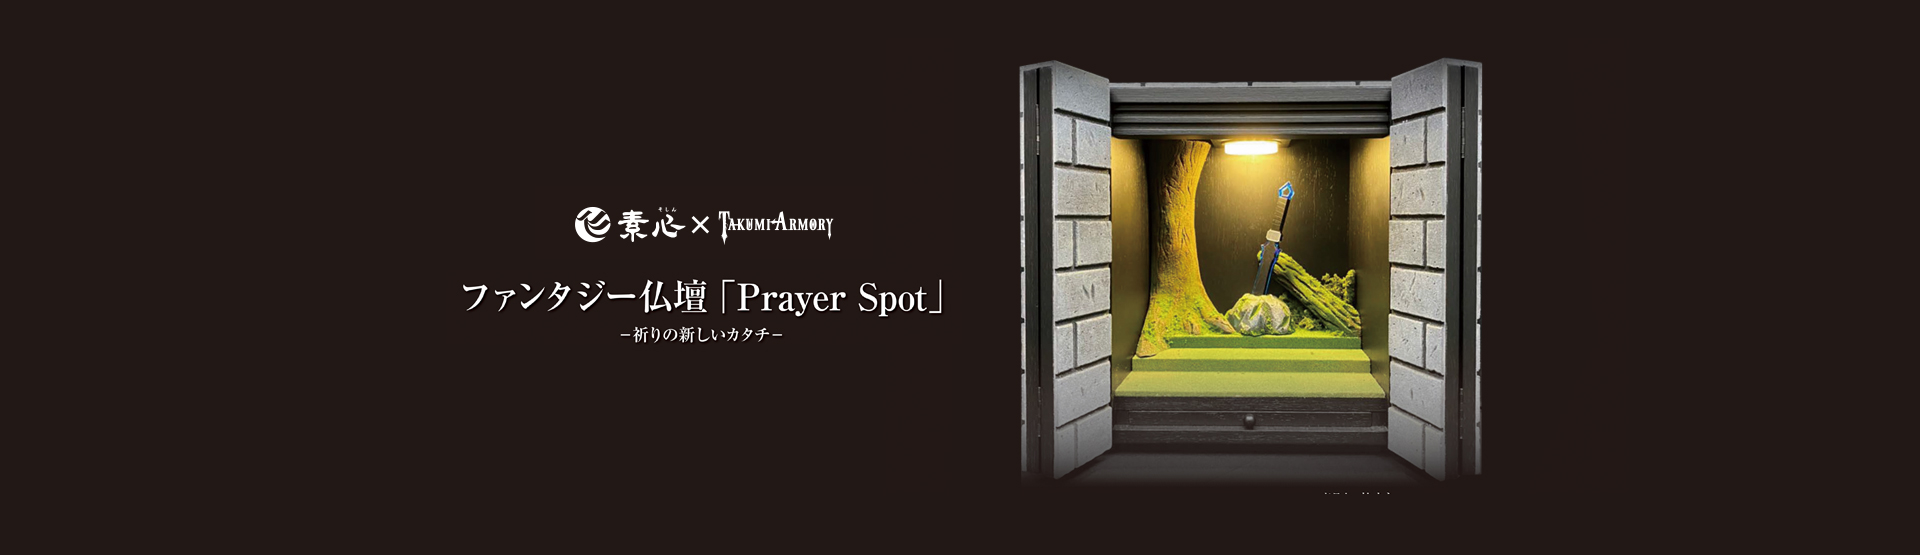 prayer-spot